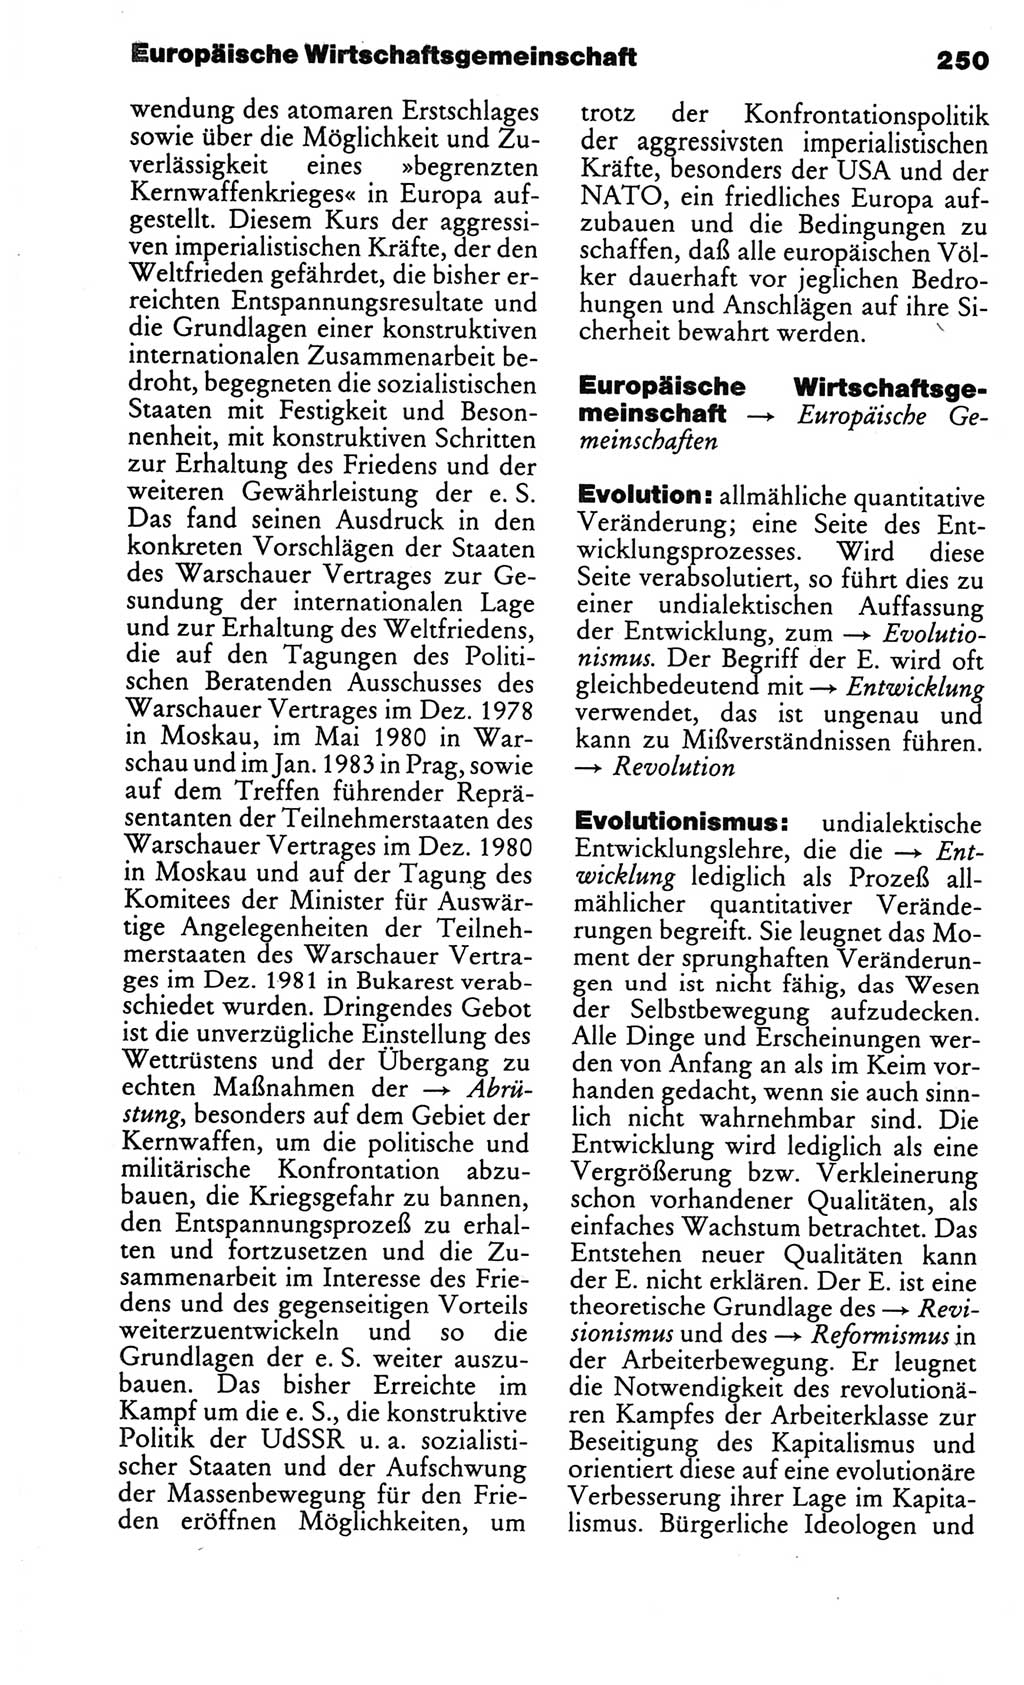 Kleines politisches Wörterbuch [Deutsche Demokratische Republik (DDR)] 1986, Seite 250 (Kl. pol. Wb. DDR 1986, S. 250)